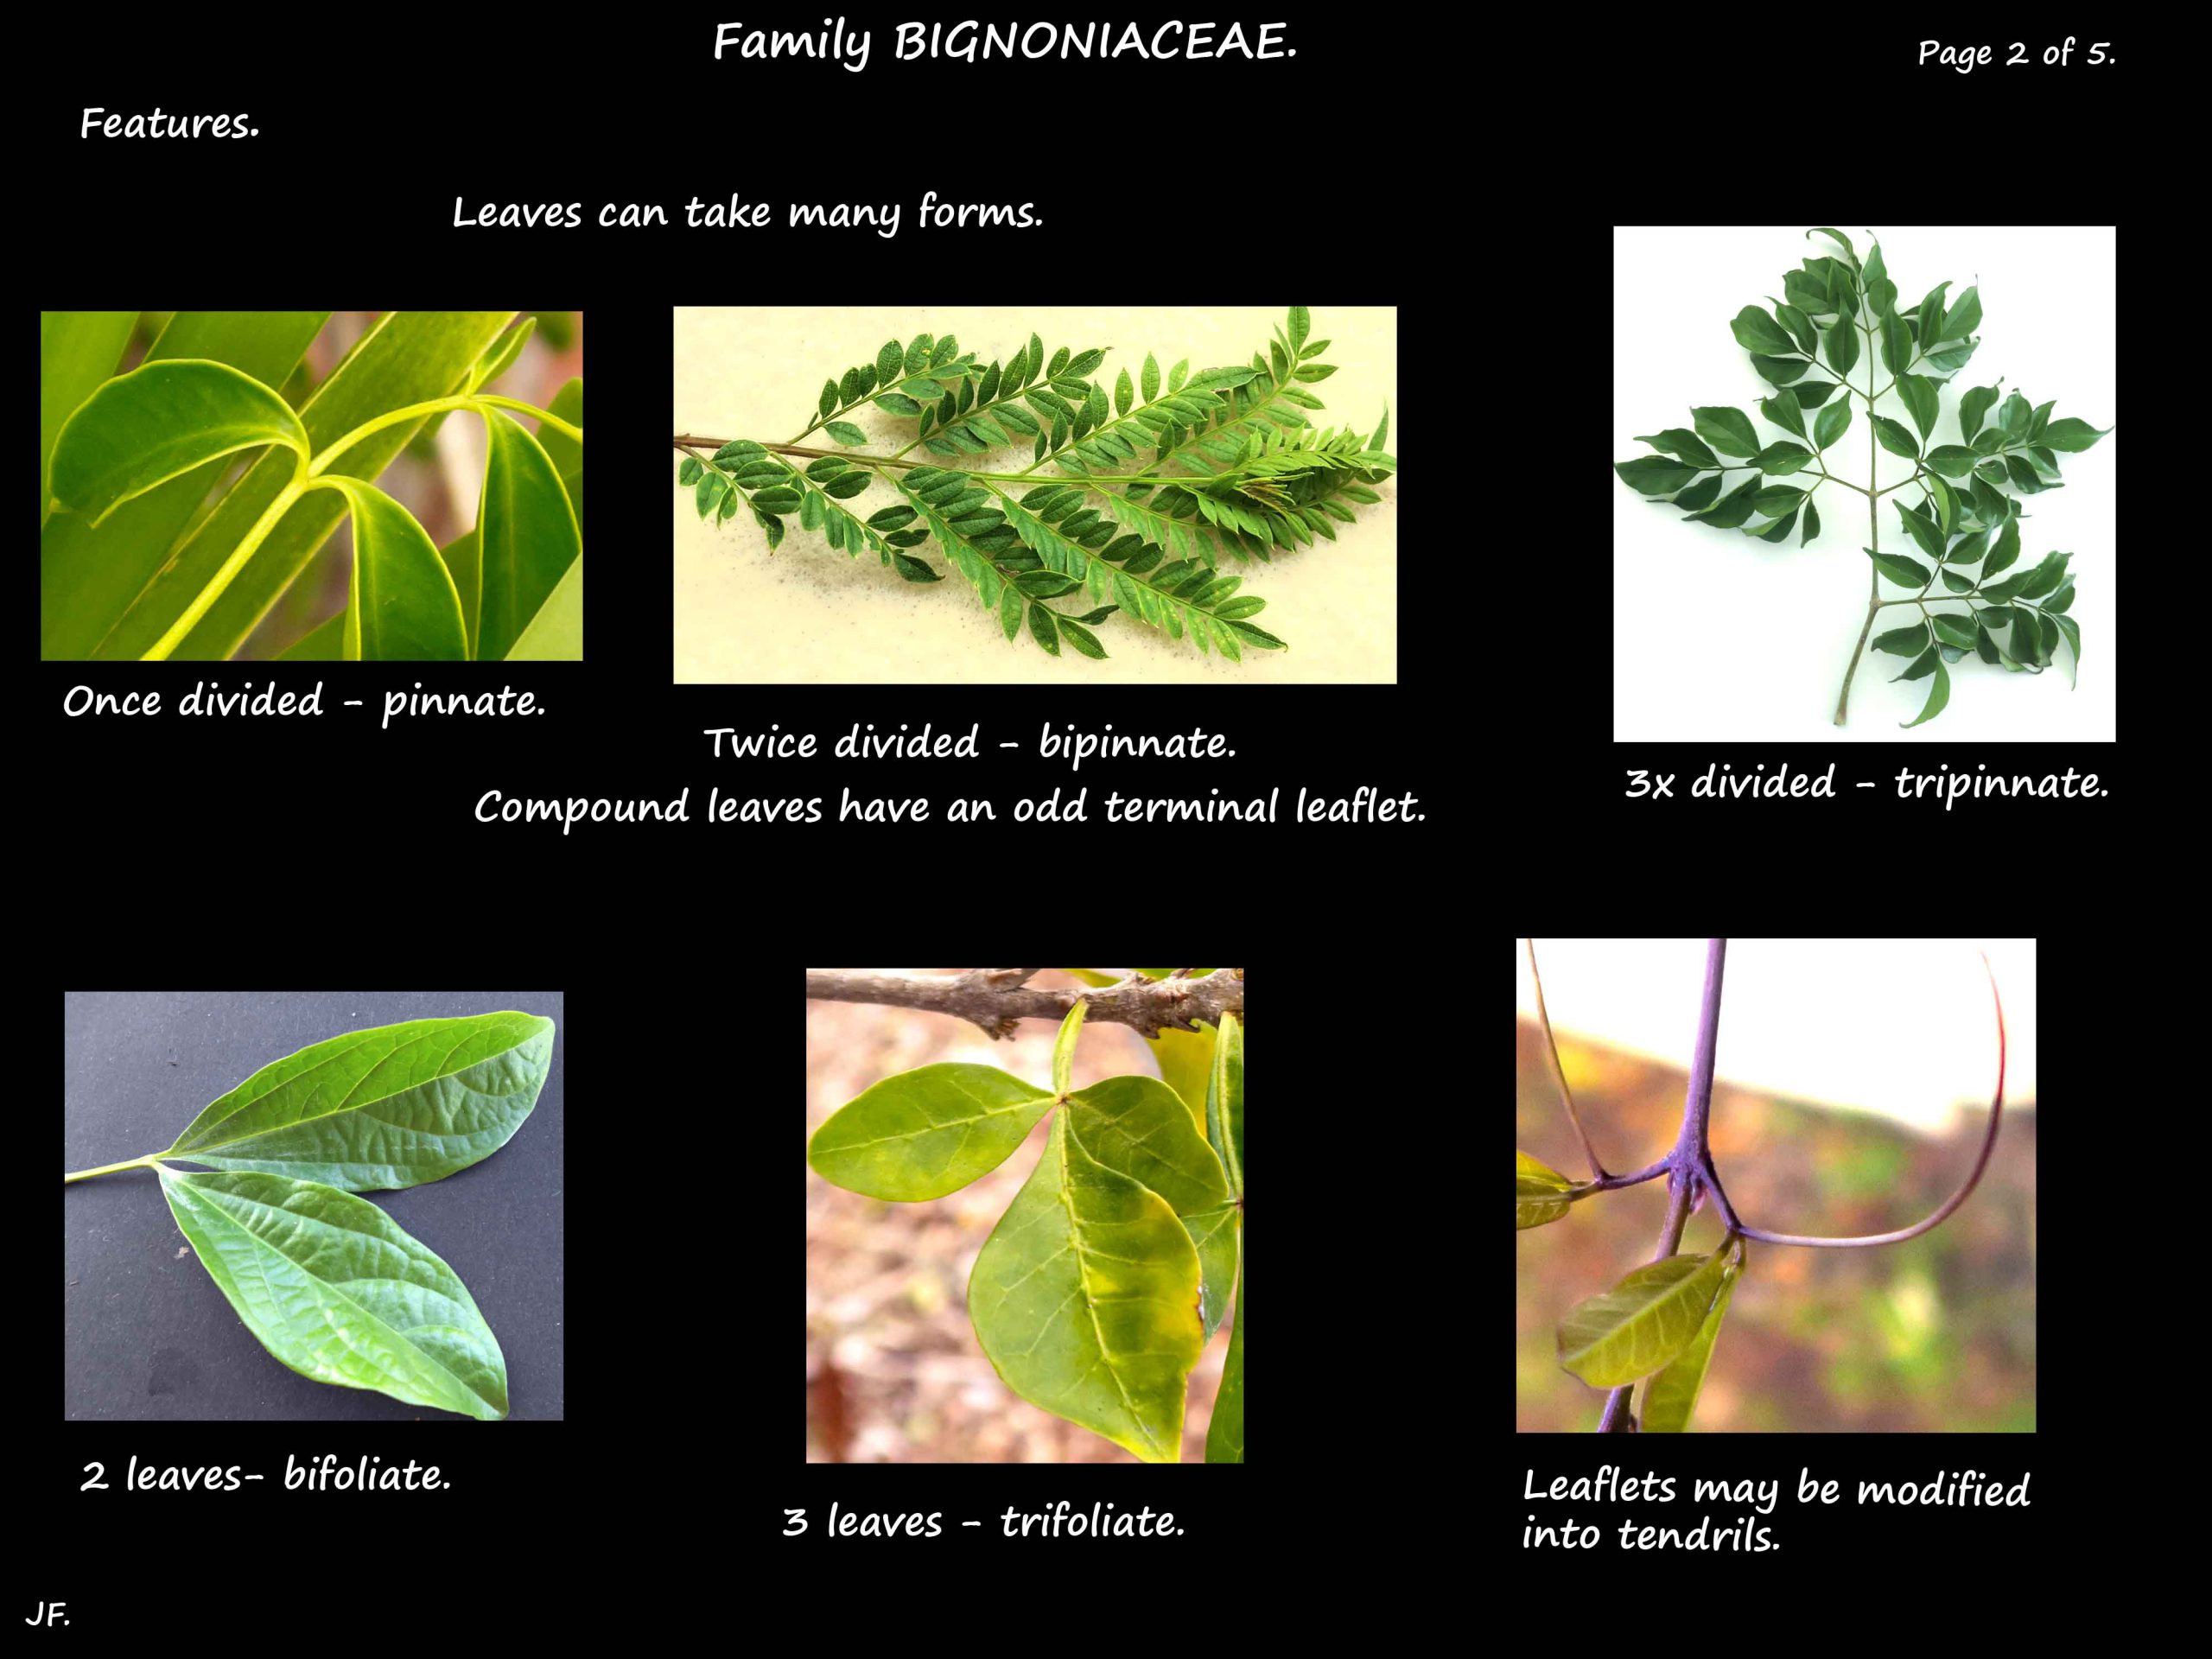 2 Bignoniaceae leaves